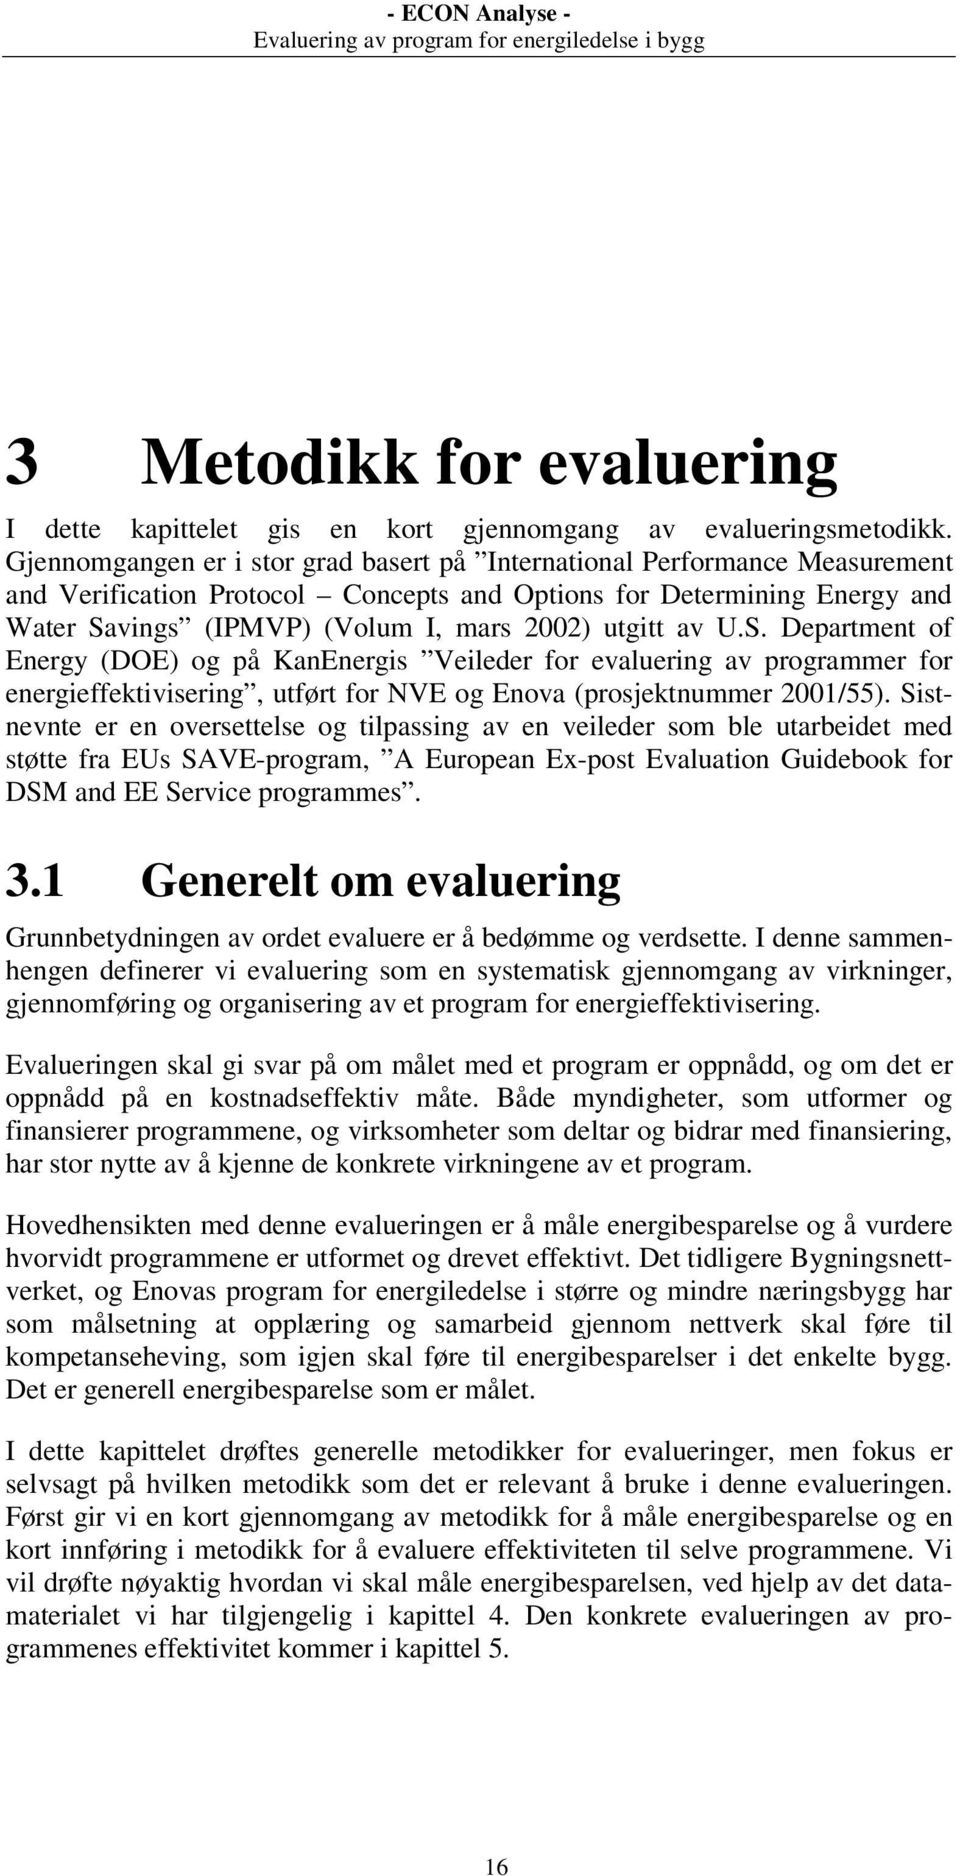 utgitt av U.S. Department of Energy (DOE) og på KanEnergis Veileder for evaluering av programmer for energieffektivisering, utført for NVE og Enova (prosjektnummer 2001/55).